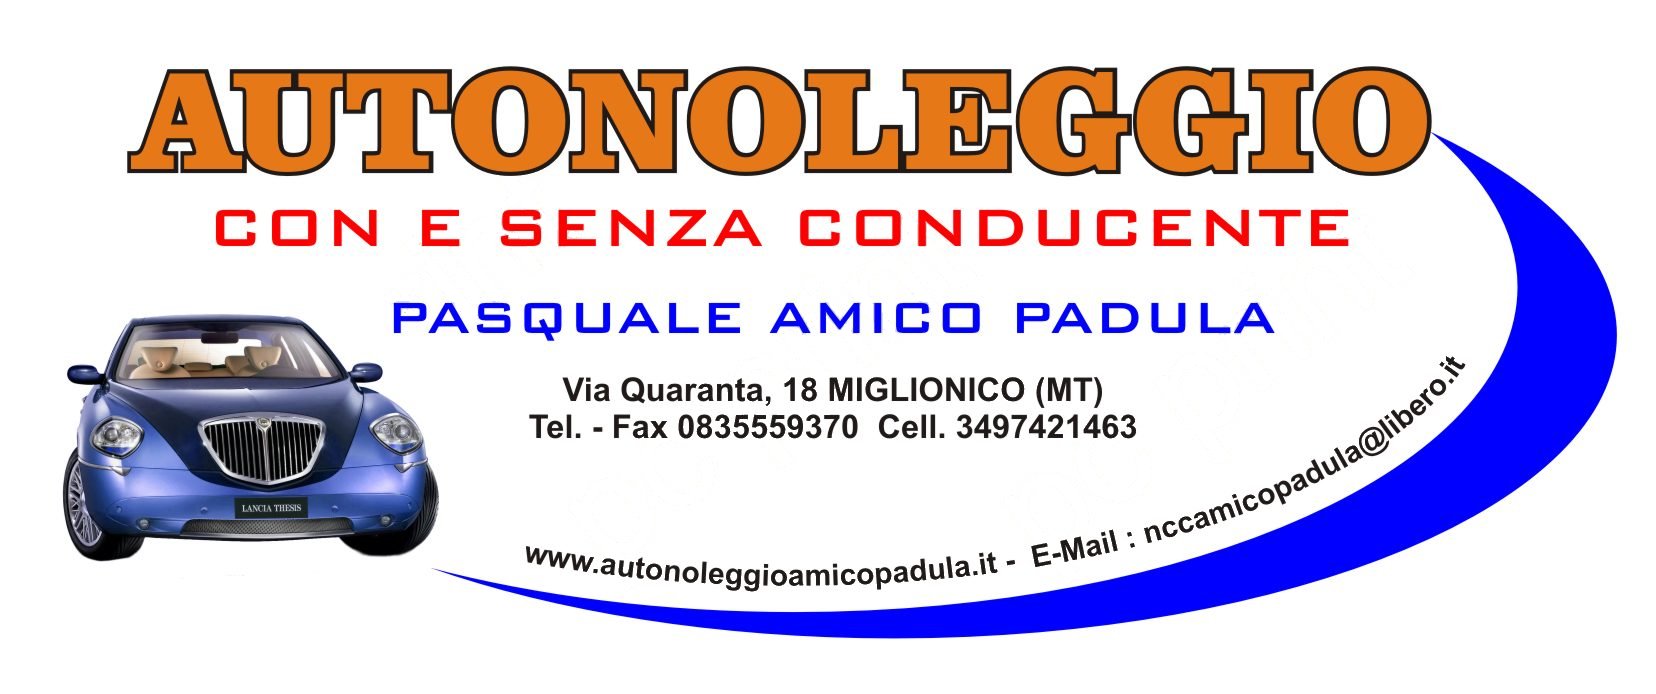 AUTONOLEGGIO con e senza conducente a MIGLIONICO (MT).  NCC Pasquale Amico Padula  - Via Quaranta, 18 - 75010 MIGLIONICO (Matera)  - InfoLine : 349.7421463 - Tel./Fax: 0835.559370  - webSite: www.autonoleggioamicopadula.it  EMail: nccamicopadula@libero.it